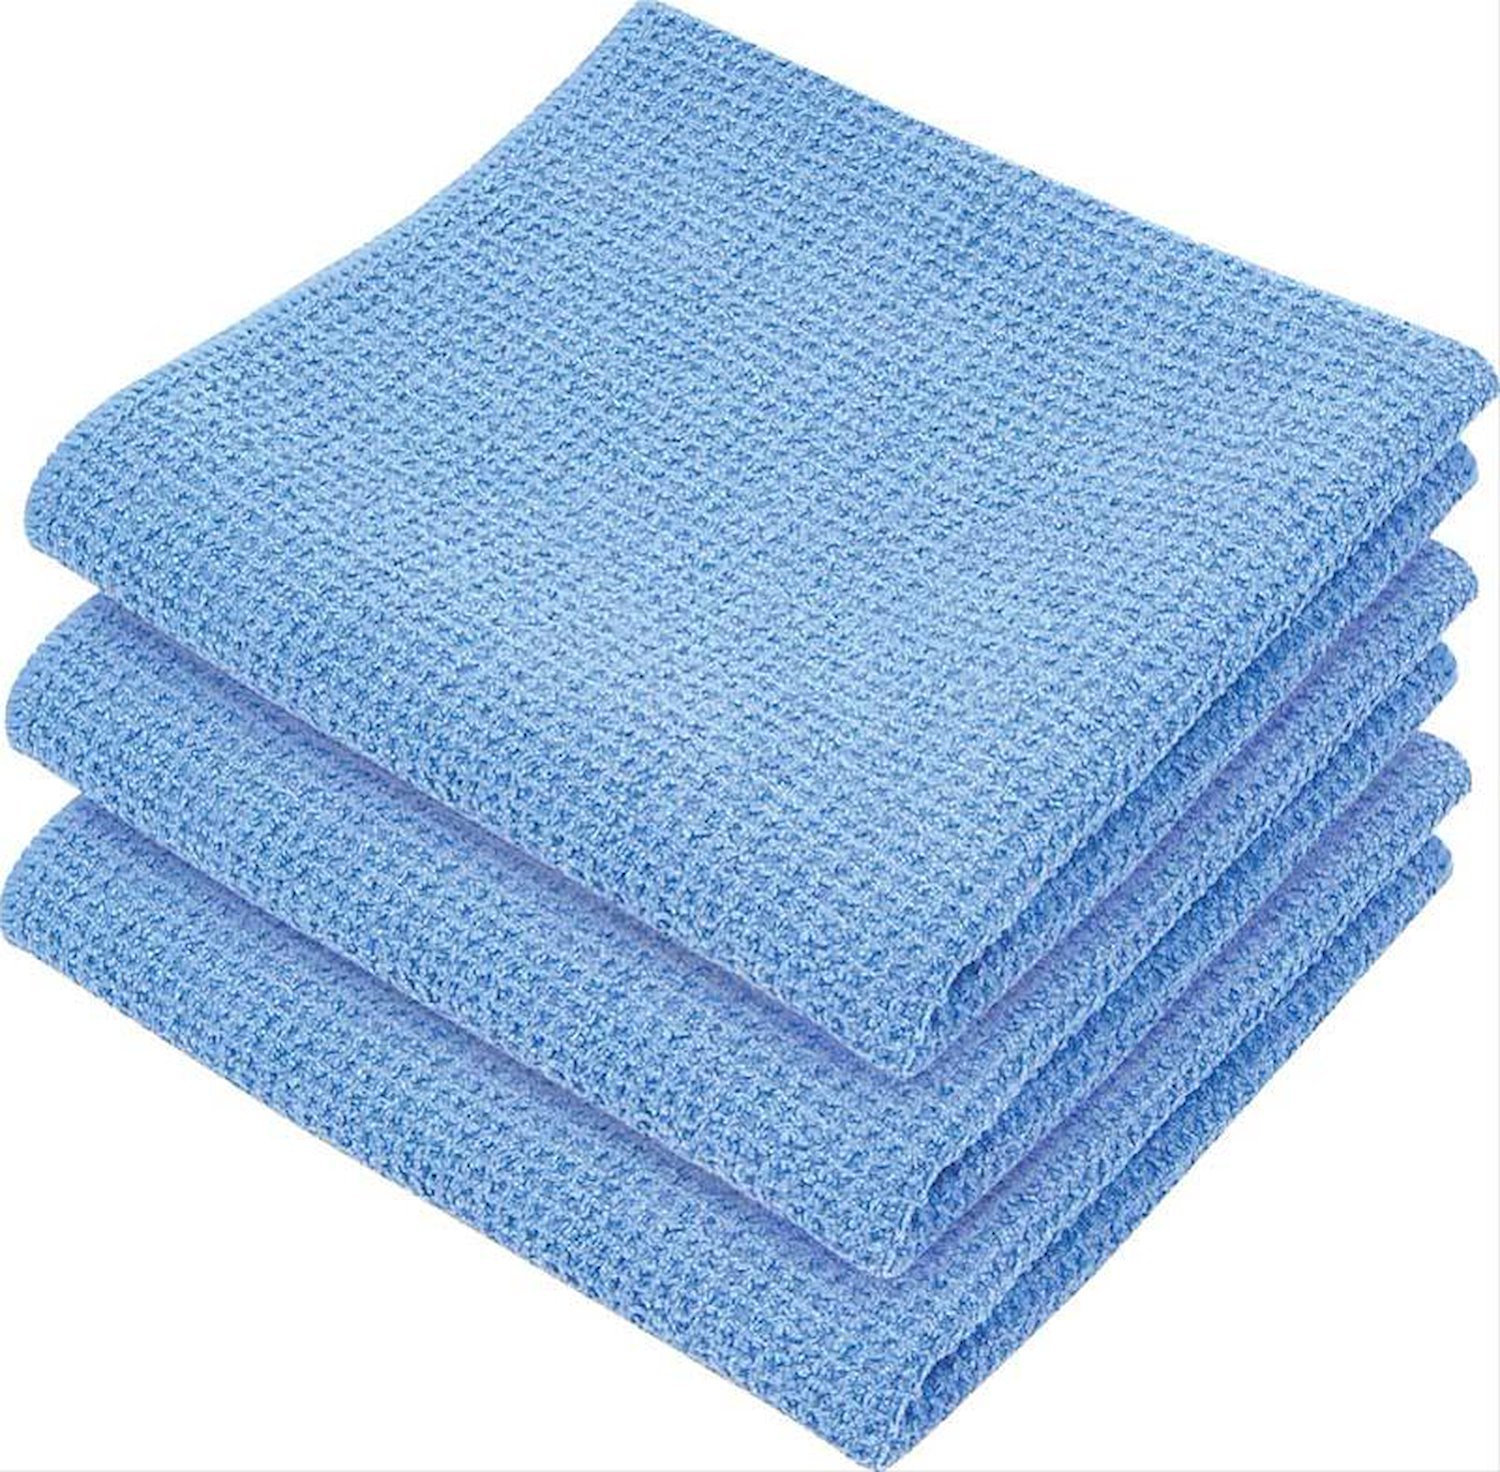 Waffle Weave Towels - 25 X 36 3